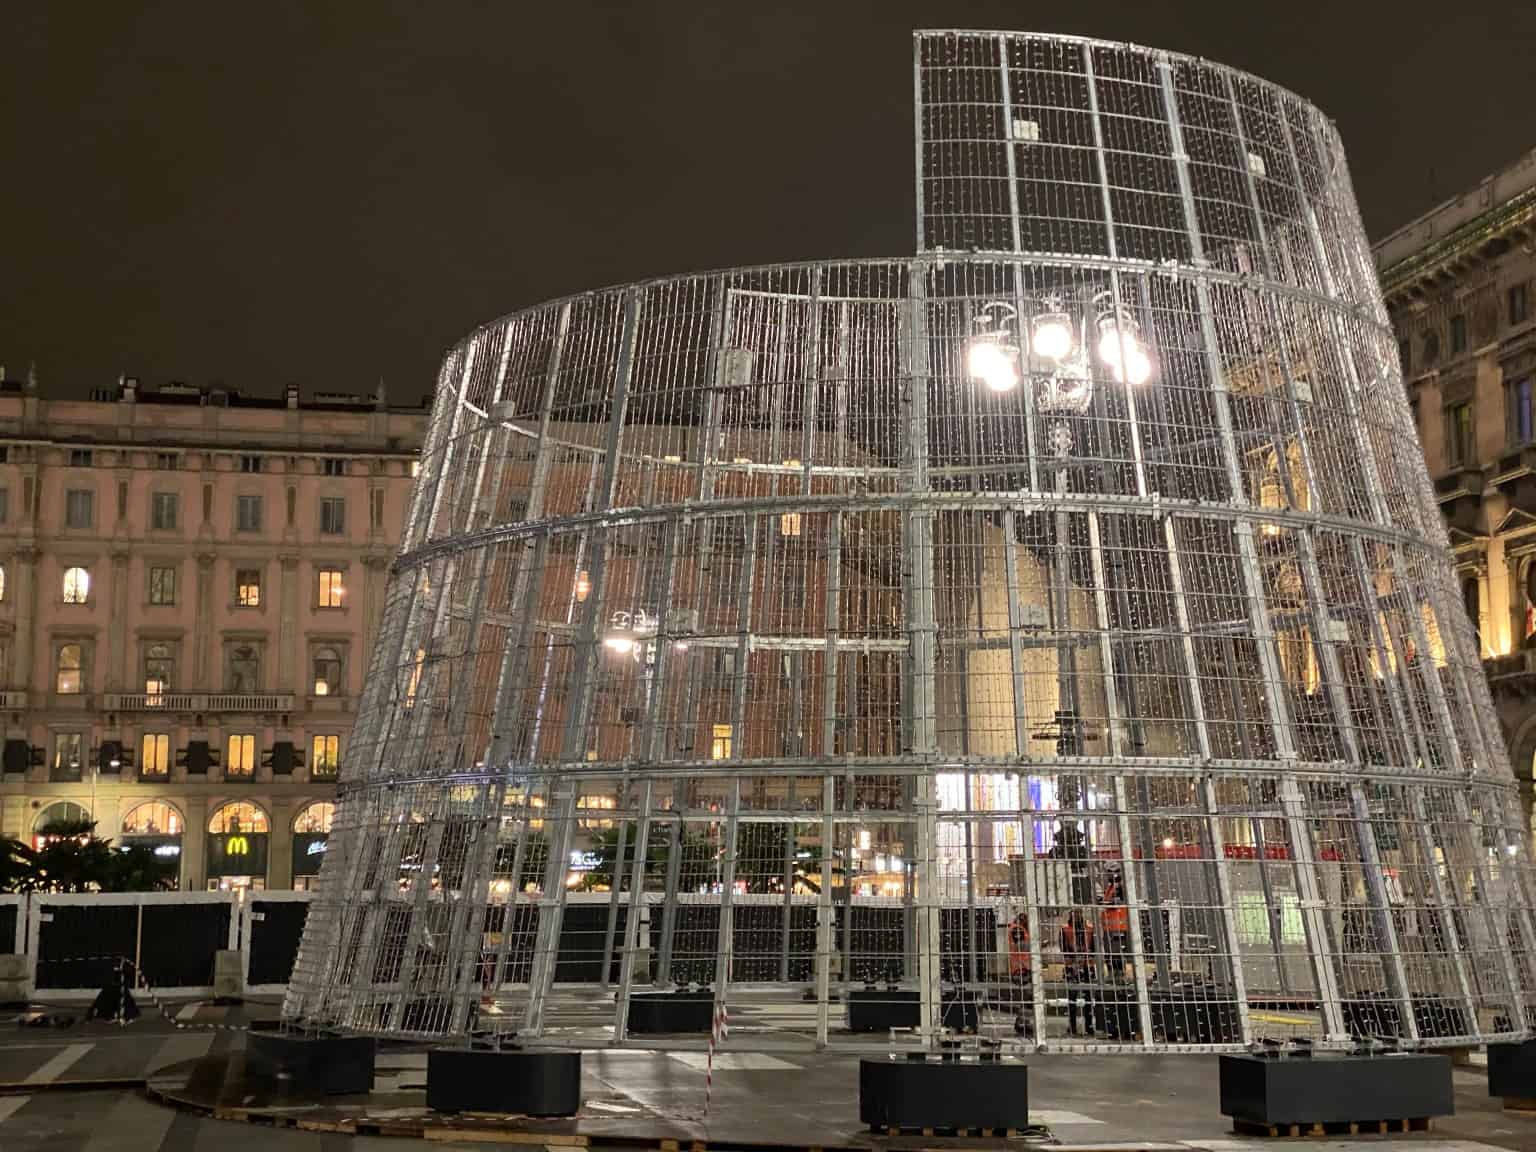 Albero Di Natale Milano 2019.Albero Di Natale Milano Grandi Giochi Di Luce Per L Albero Firmato Esselunga